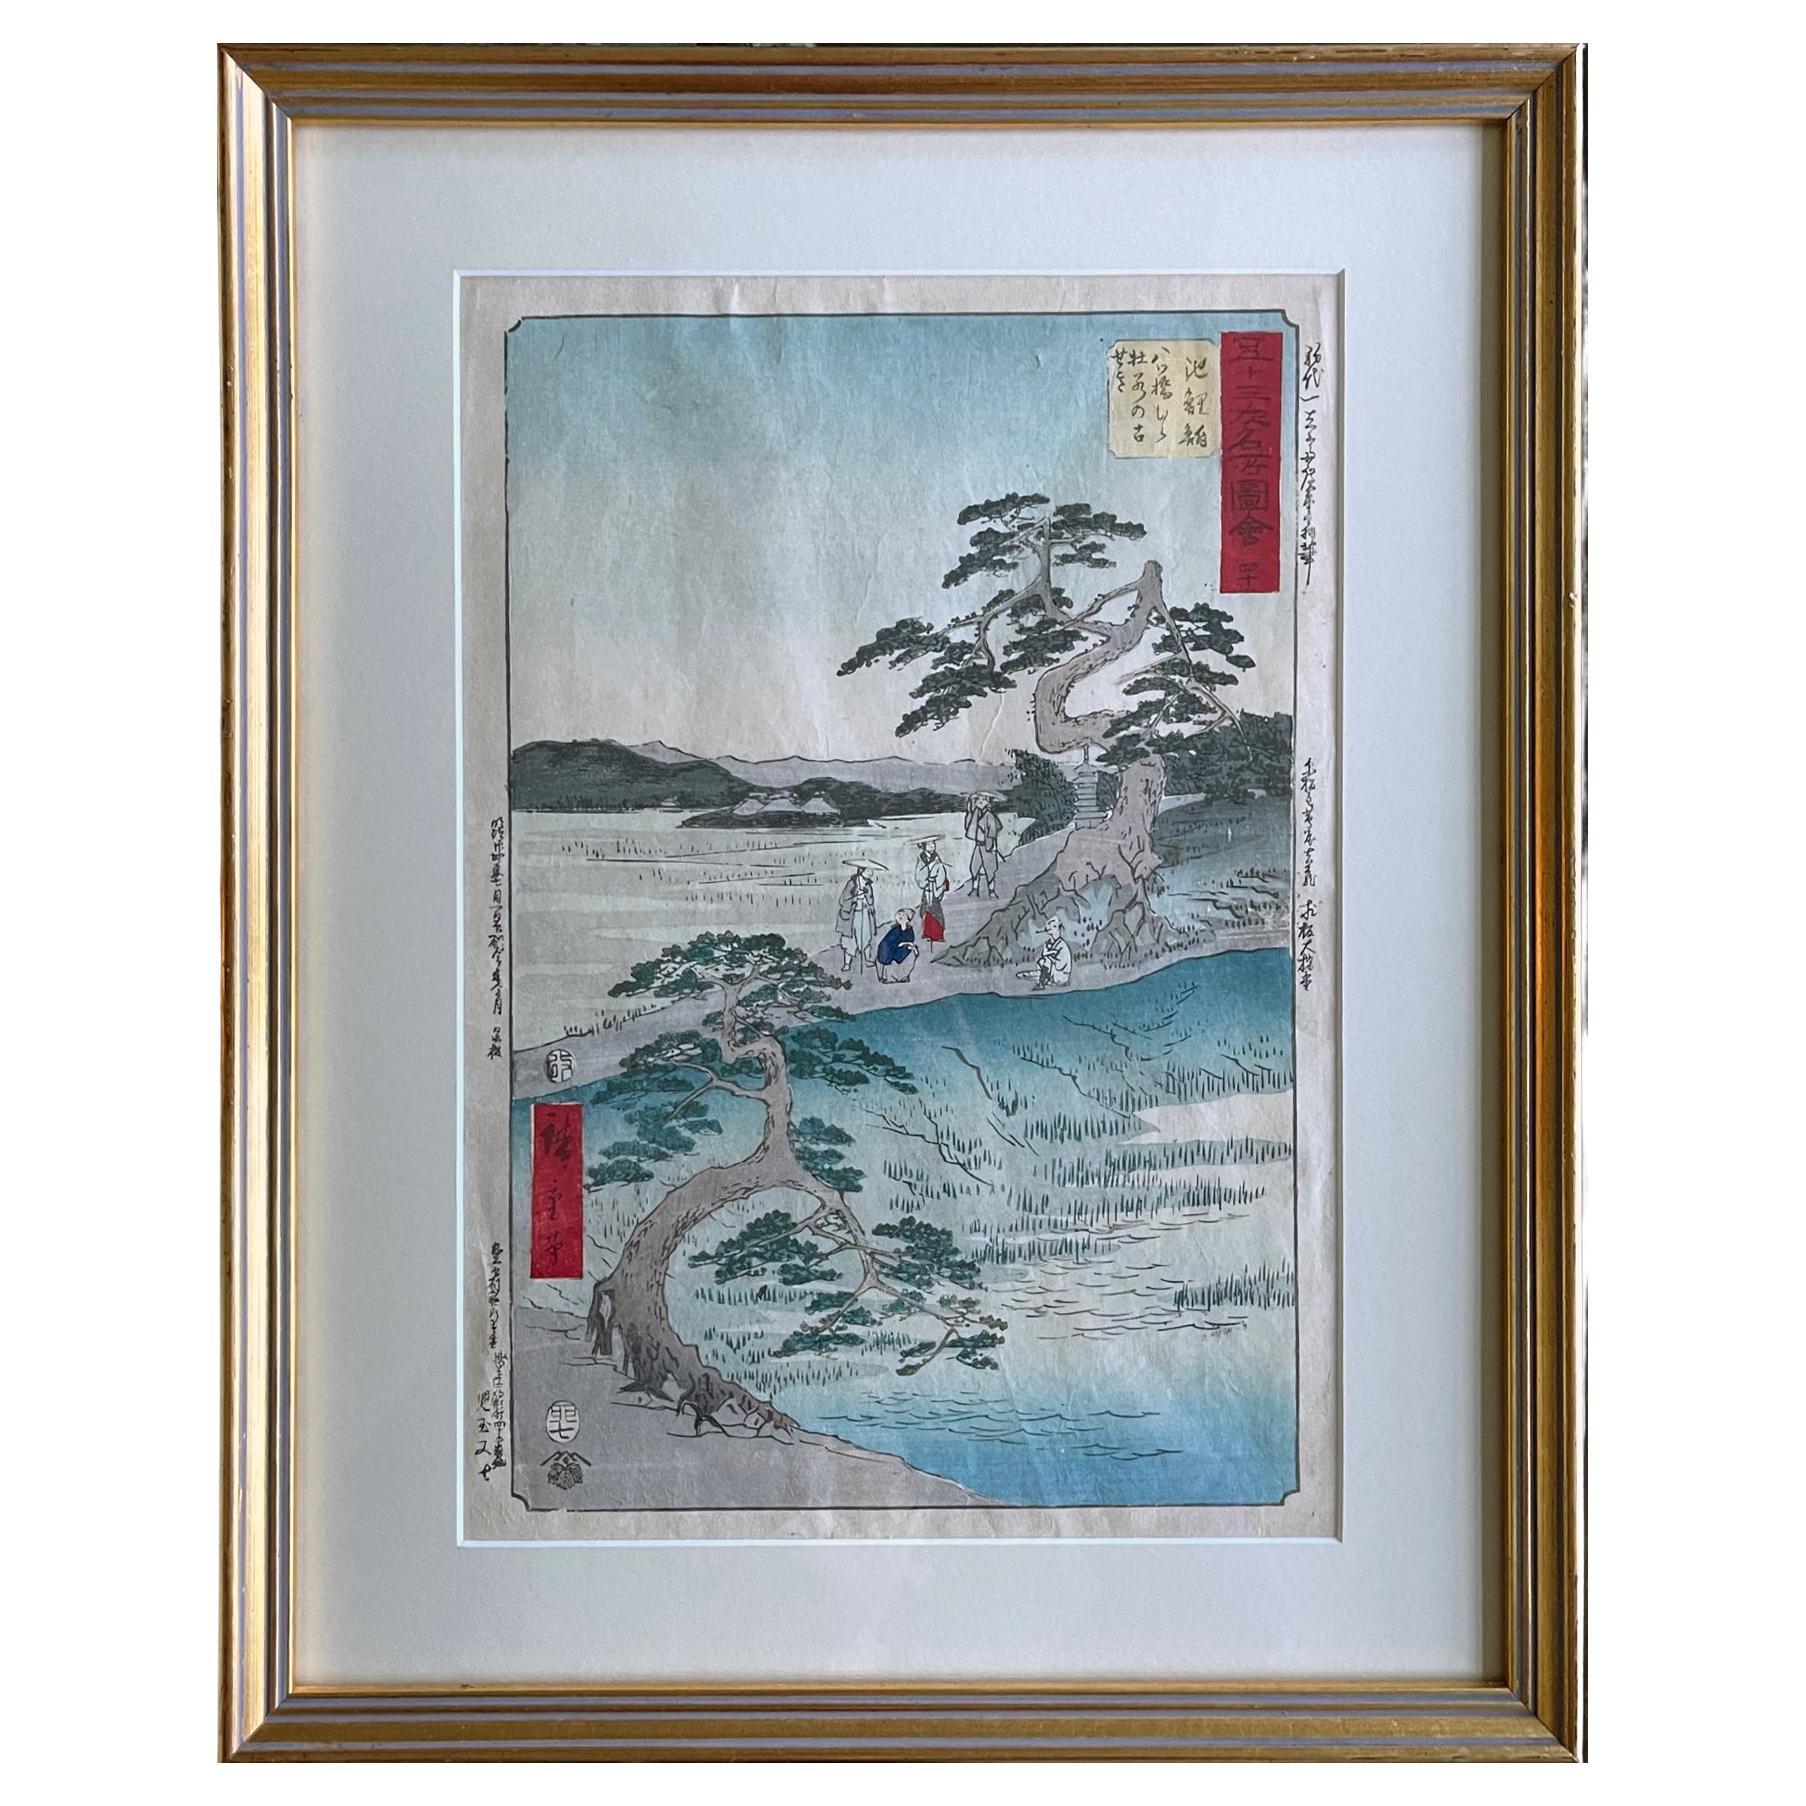 Japanischer Holzschnitt-Druck der dreiundfünfzig Stationen des Tokaido von Hiroshige